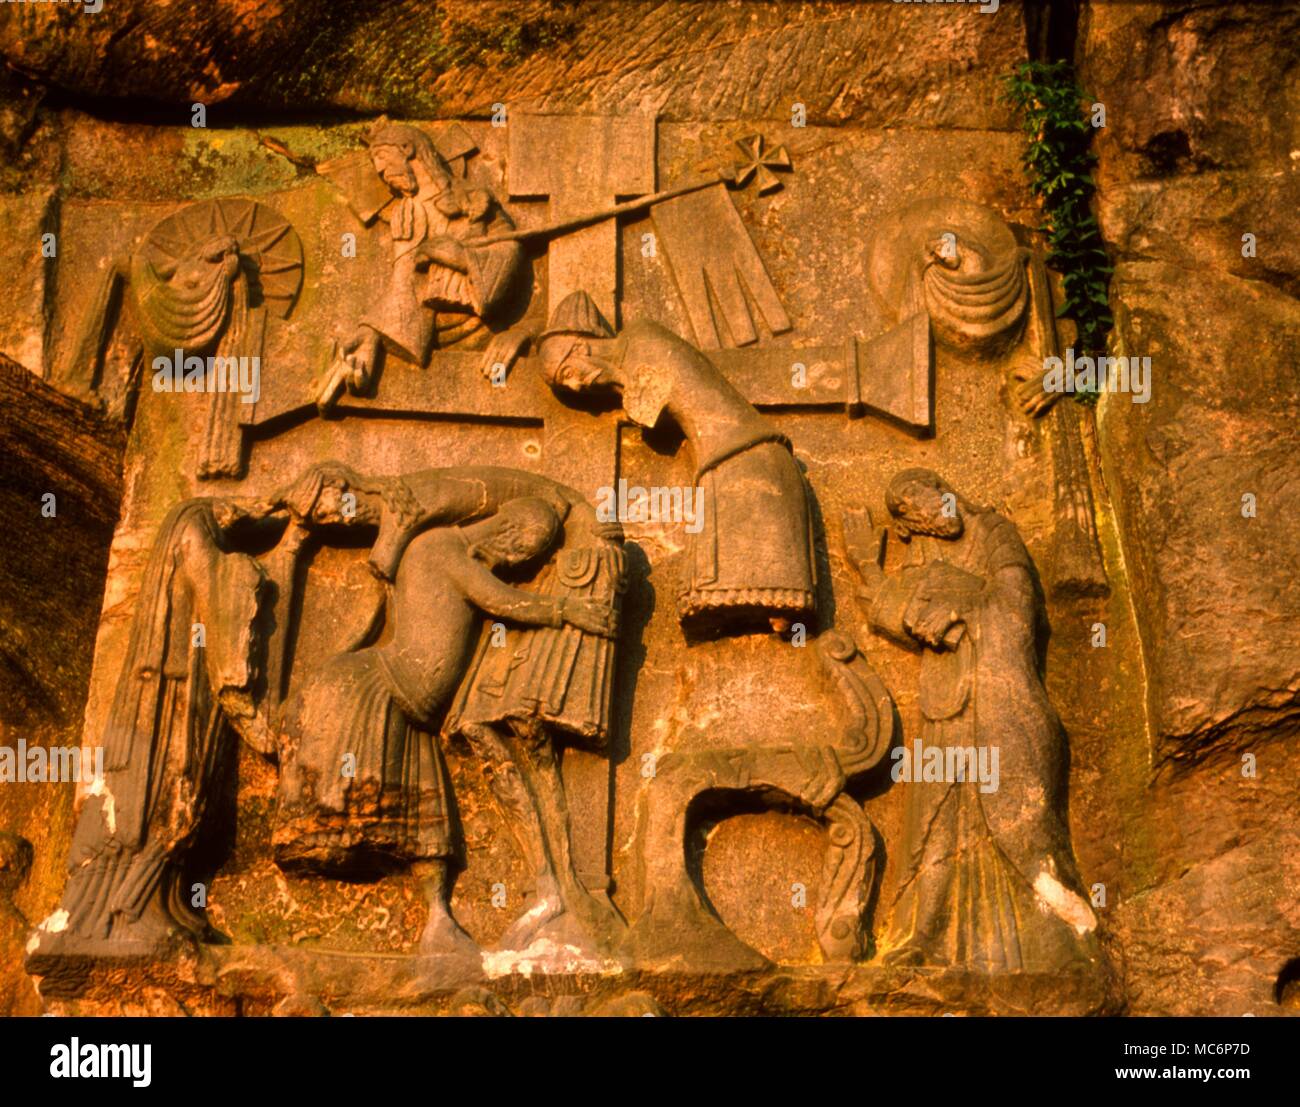 Das Relief auf der Exernsteine rock depics Christus vom "Baum" als Version des Odin Mythos angehoben wird. Am Fuße der Szene, der Urminsul, der alte Baum des germanischen Mythos, Biegungen in der Ehrerbietung. Stockfoto